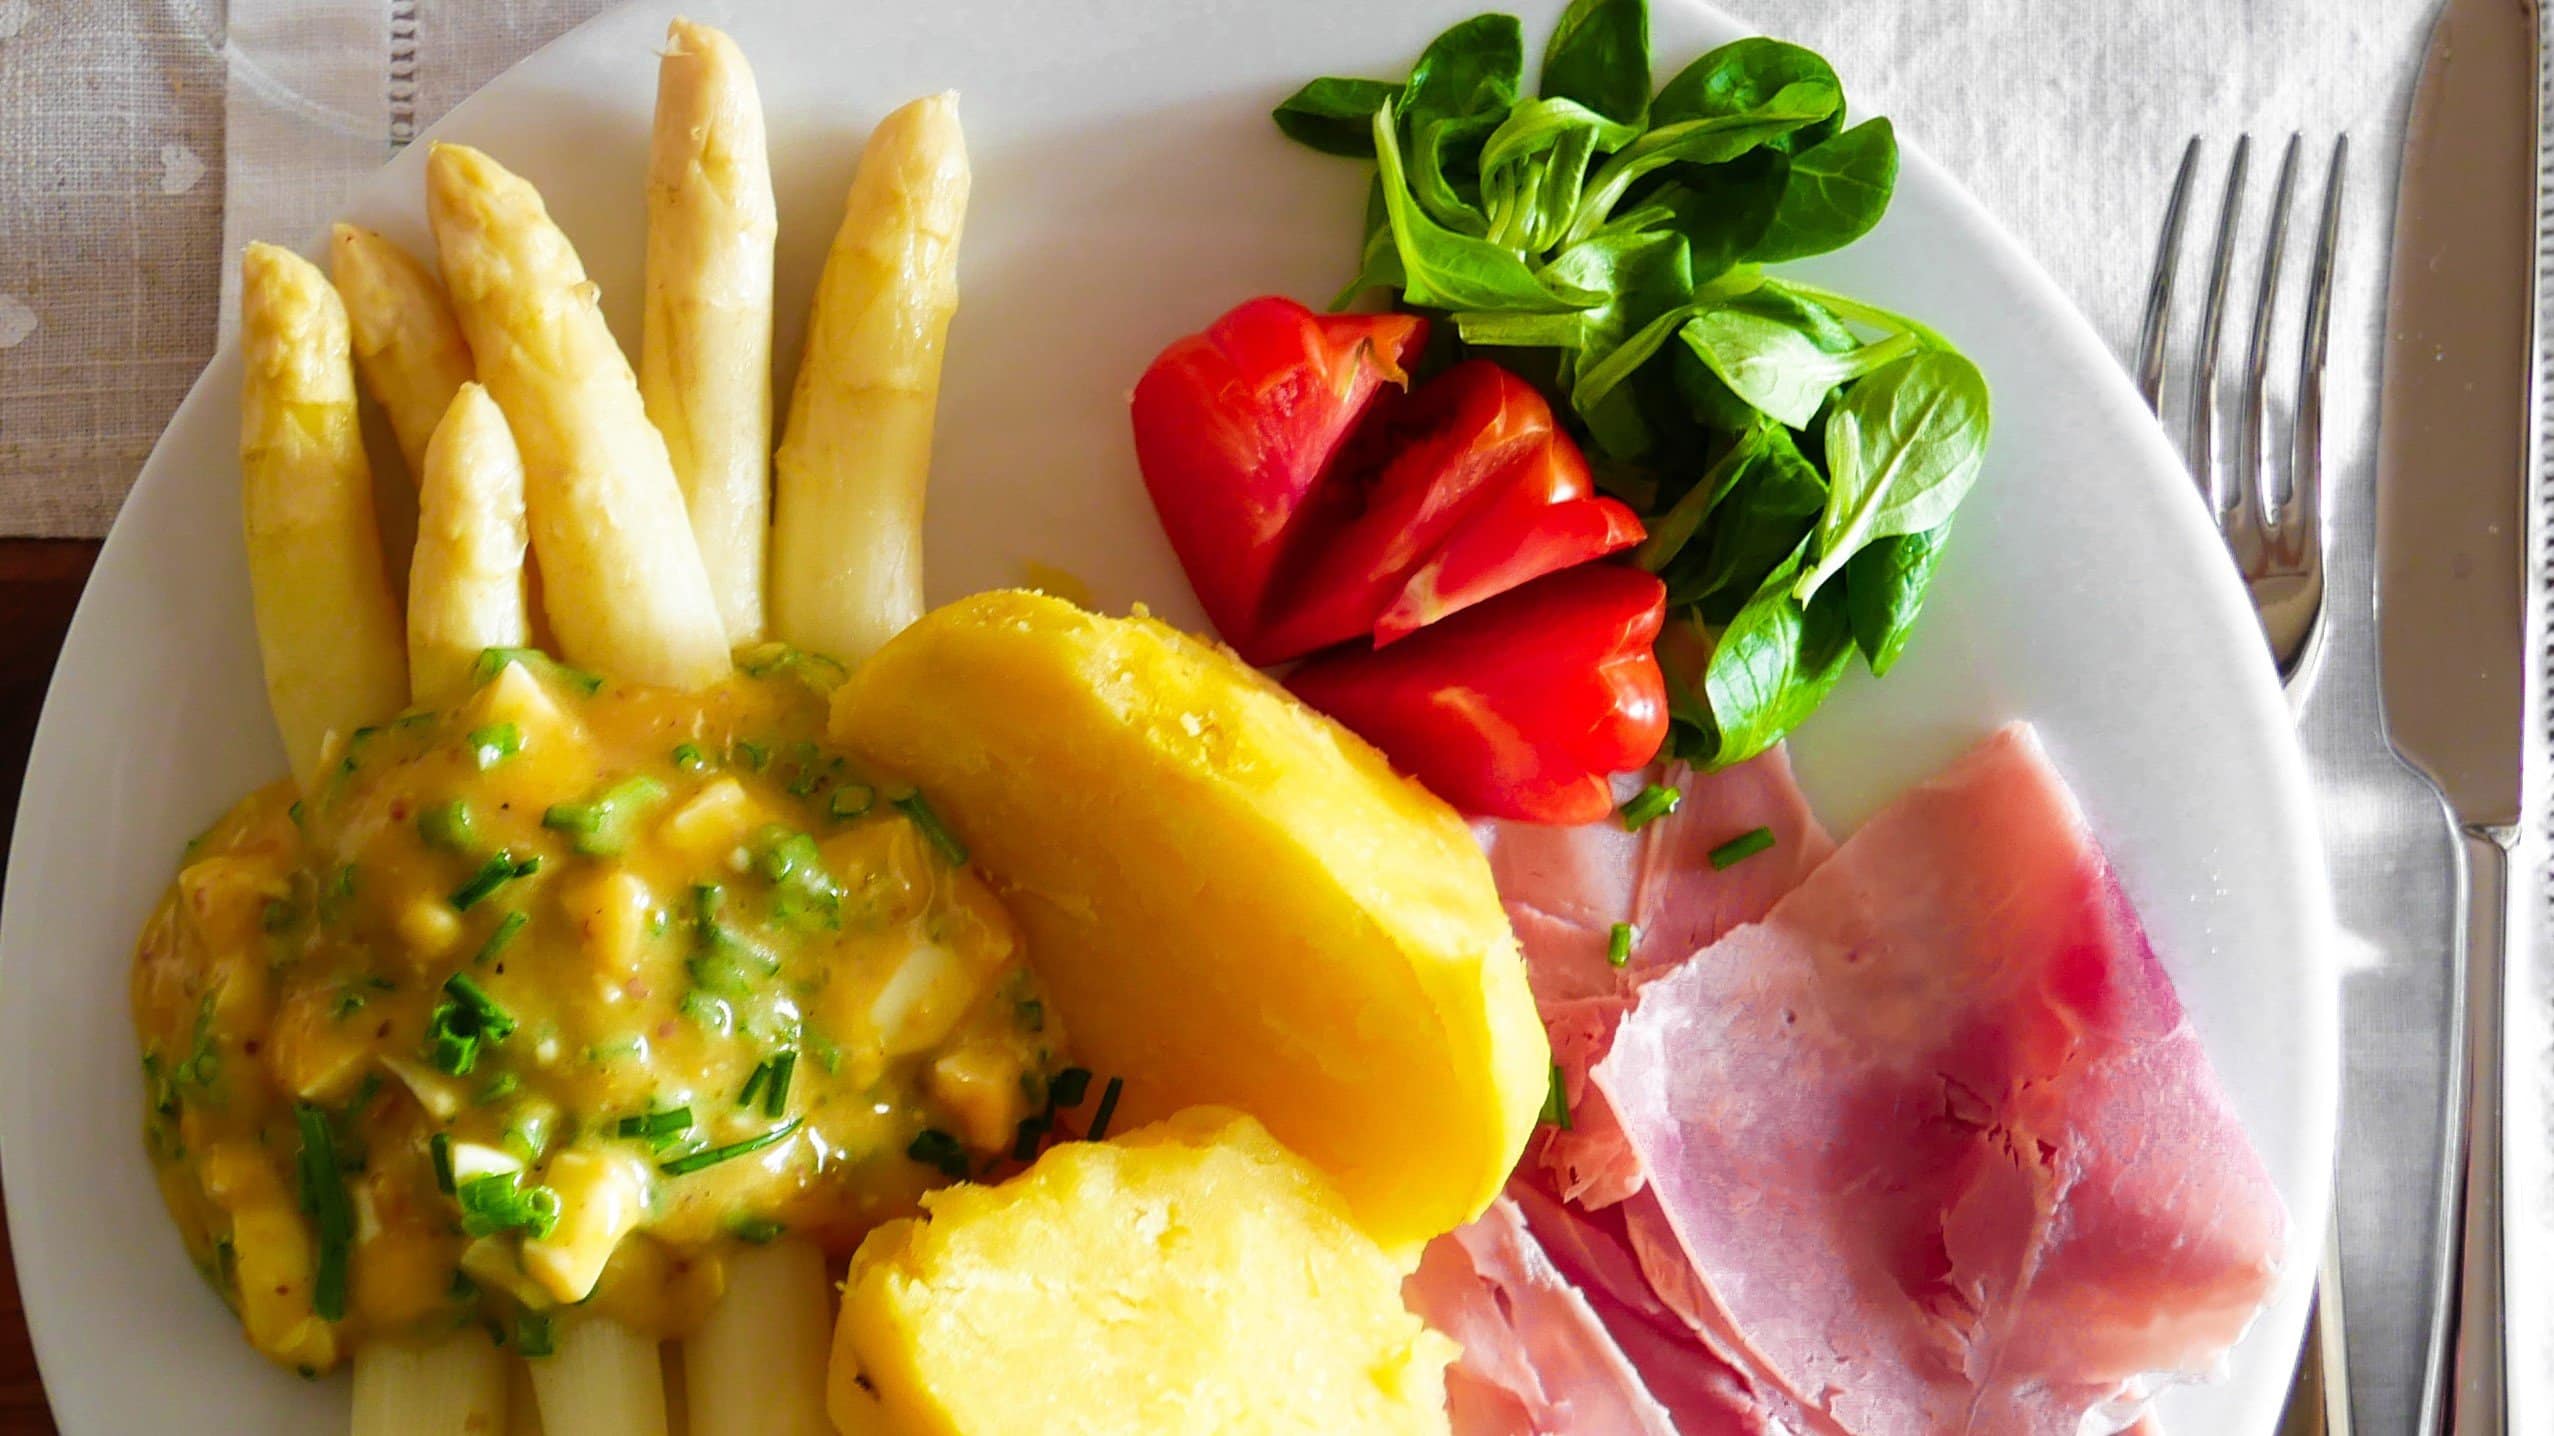 Asparagi alla Bolzanina Spargel mit Bozner Sauce auf weißem Teller mit Kartoffeln, Schinken und Salat. Draufsicht.